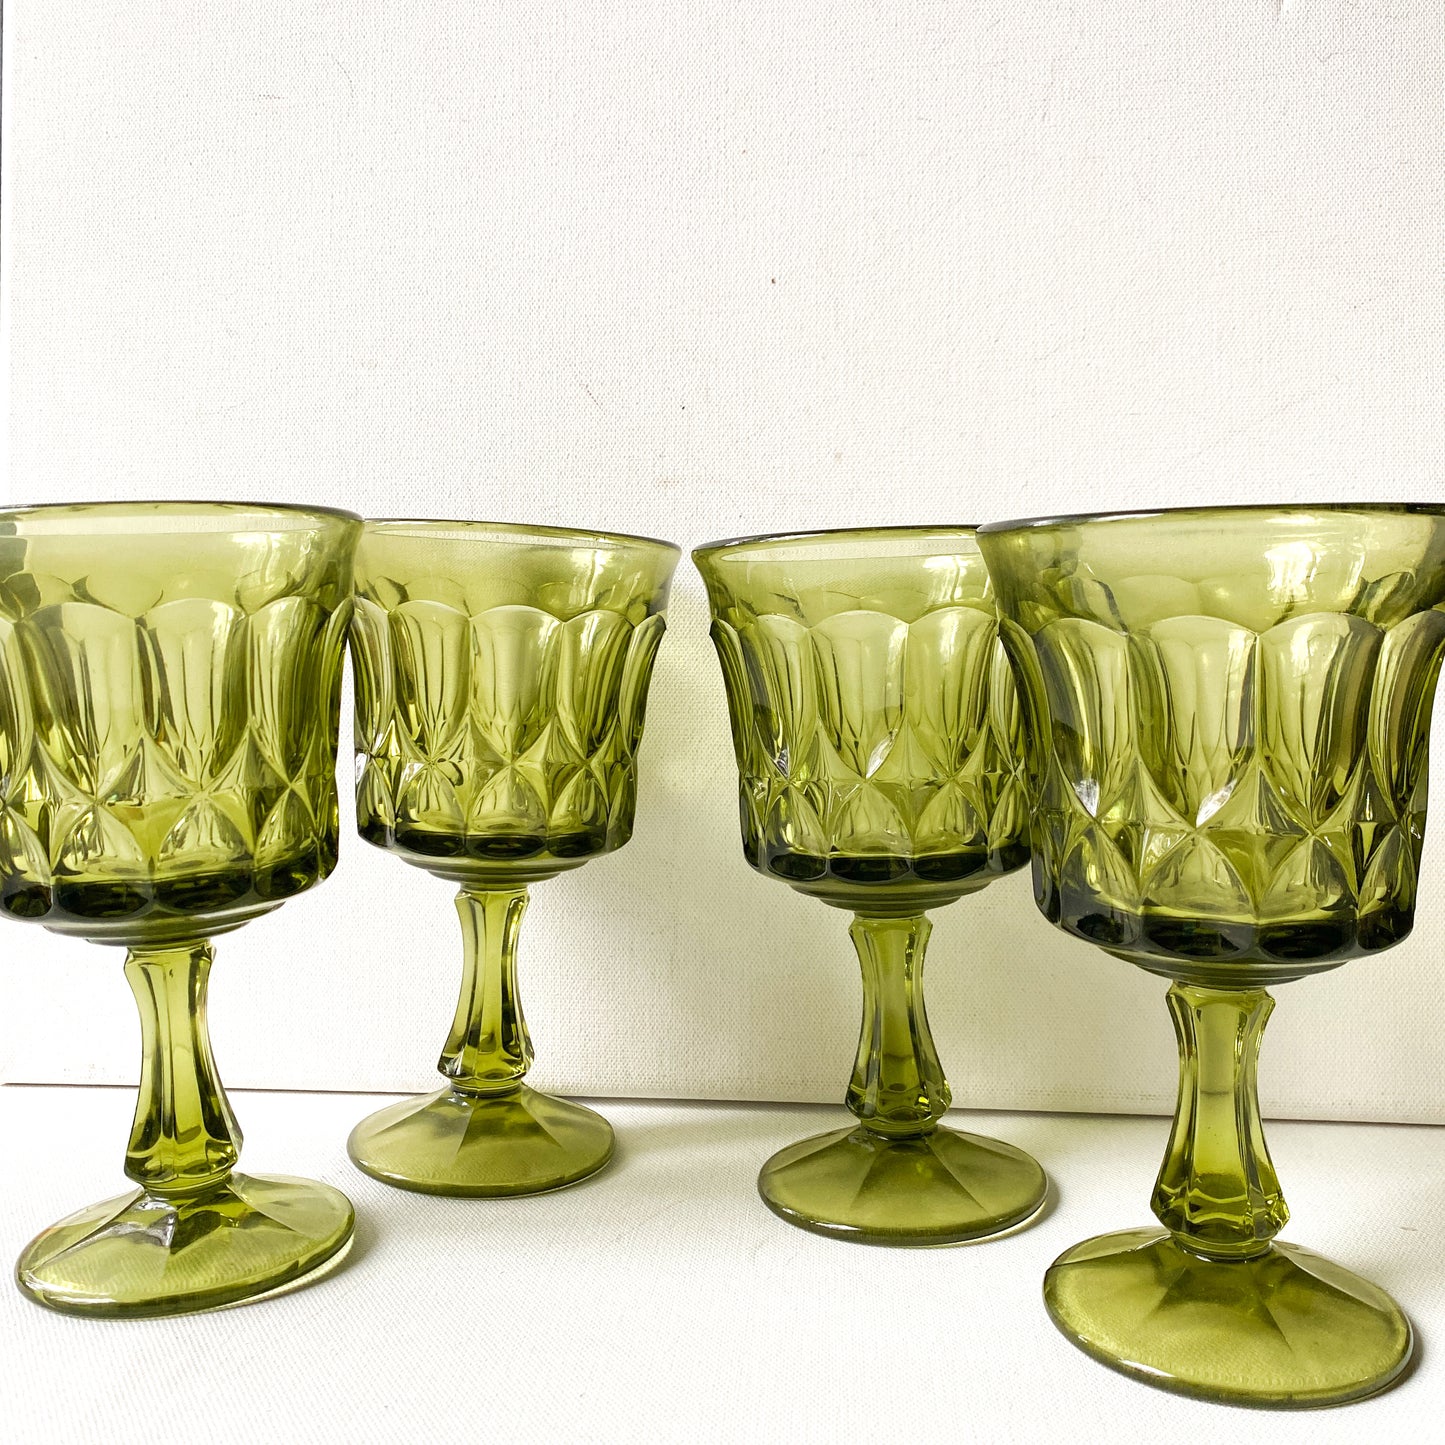 Vintage Noritake Perspective Olive Green Goblets, set of 4 glasses